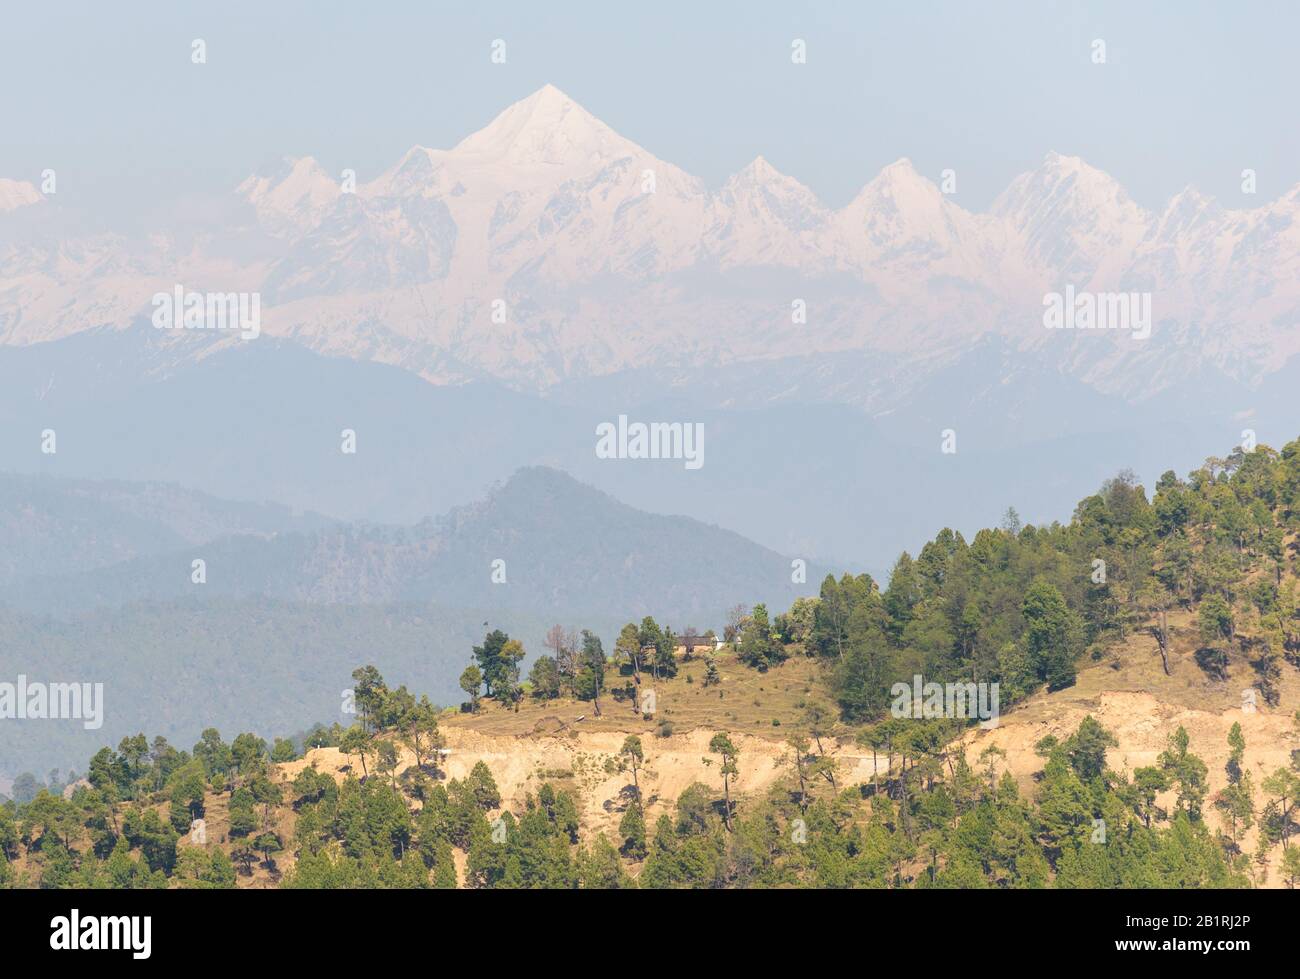 Die Panchachuli-Reihe sichtbar durch den Dunst über den von Bäumen gesäumten Hügeln aus dem Himalaya-Dorf Kausani in Uttarakhand, Indien. Stockfoto